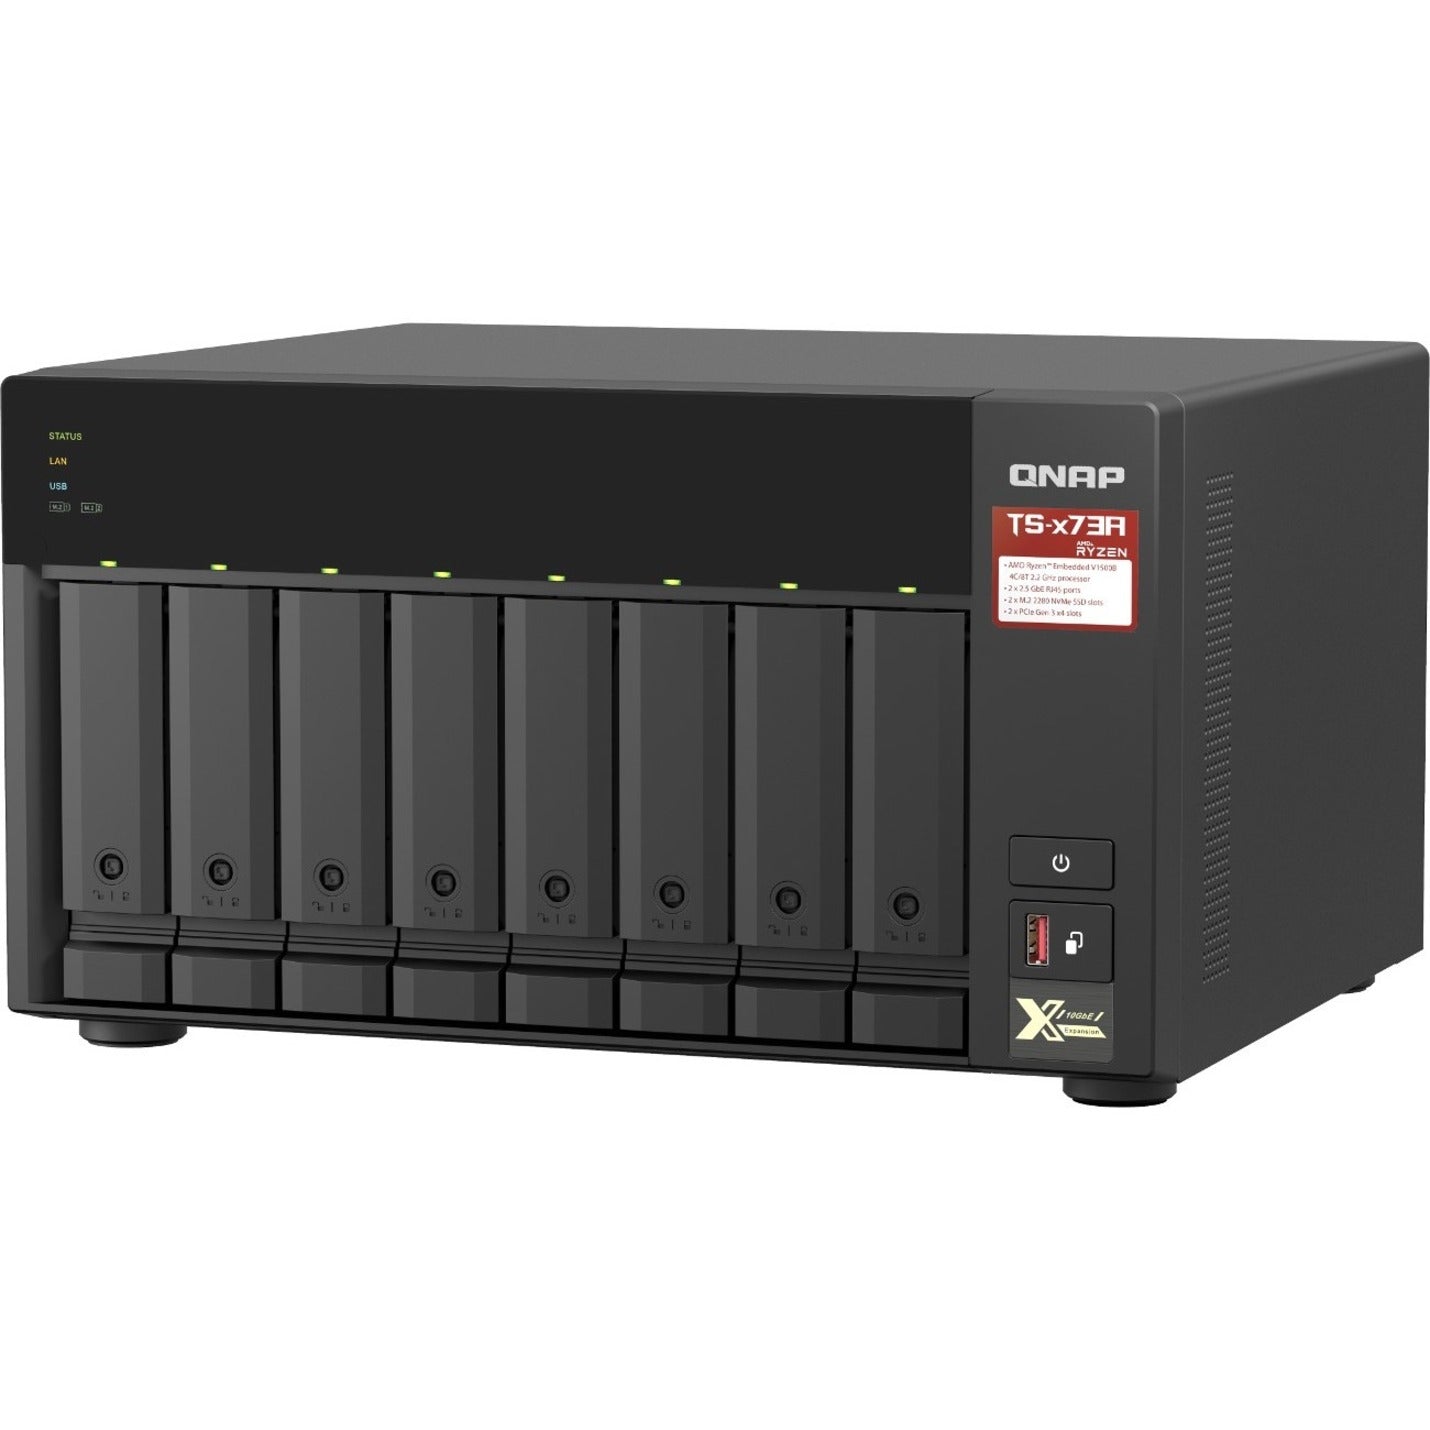 QNAP TS-873A-8G-US TS-x73A NAS Storage System, 8GB RAM, 8-Bay, Ryzen V1500B, 2.2GHz, 2.5GbE Ethernet